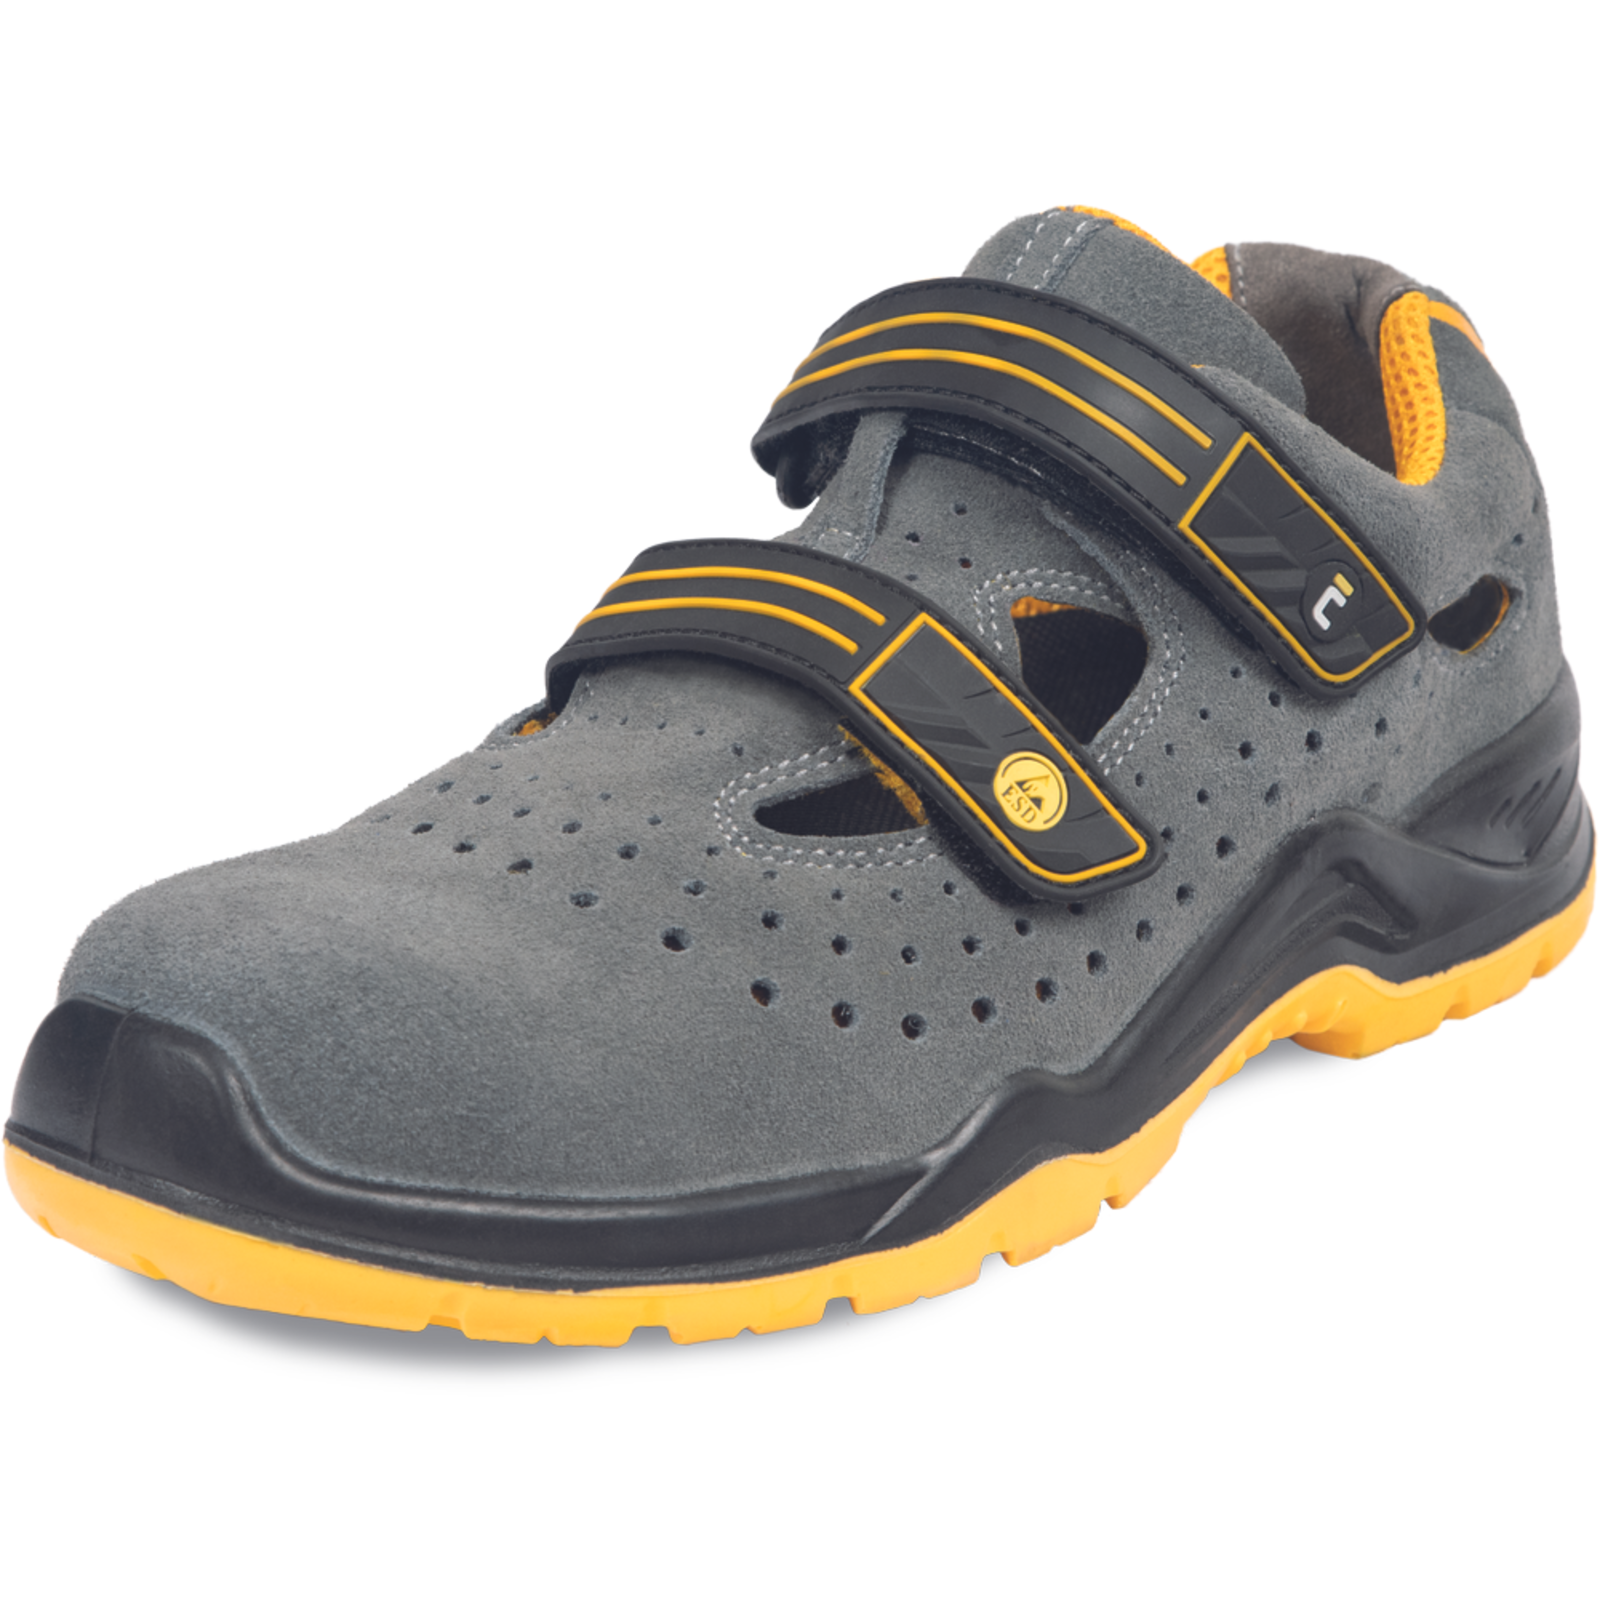 Pracovné bezpečnostné sandále Cerva Yuwill MF ESD S1P SRC - veľkosť: 36, farba: sivá/žltá